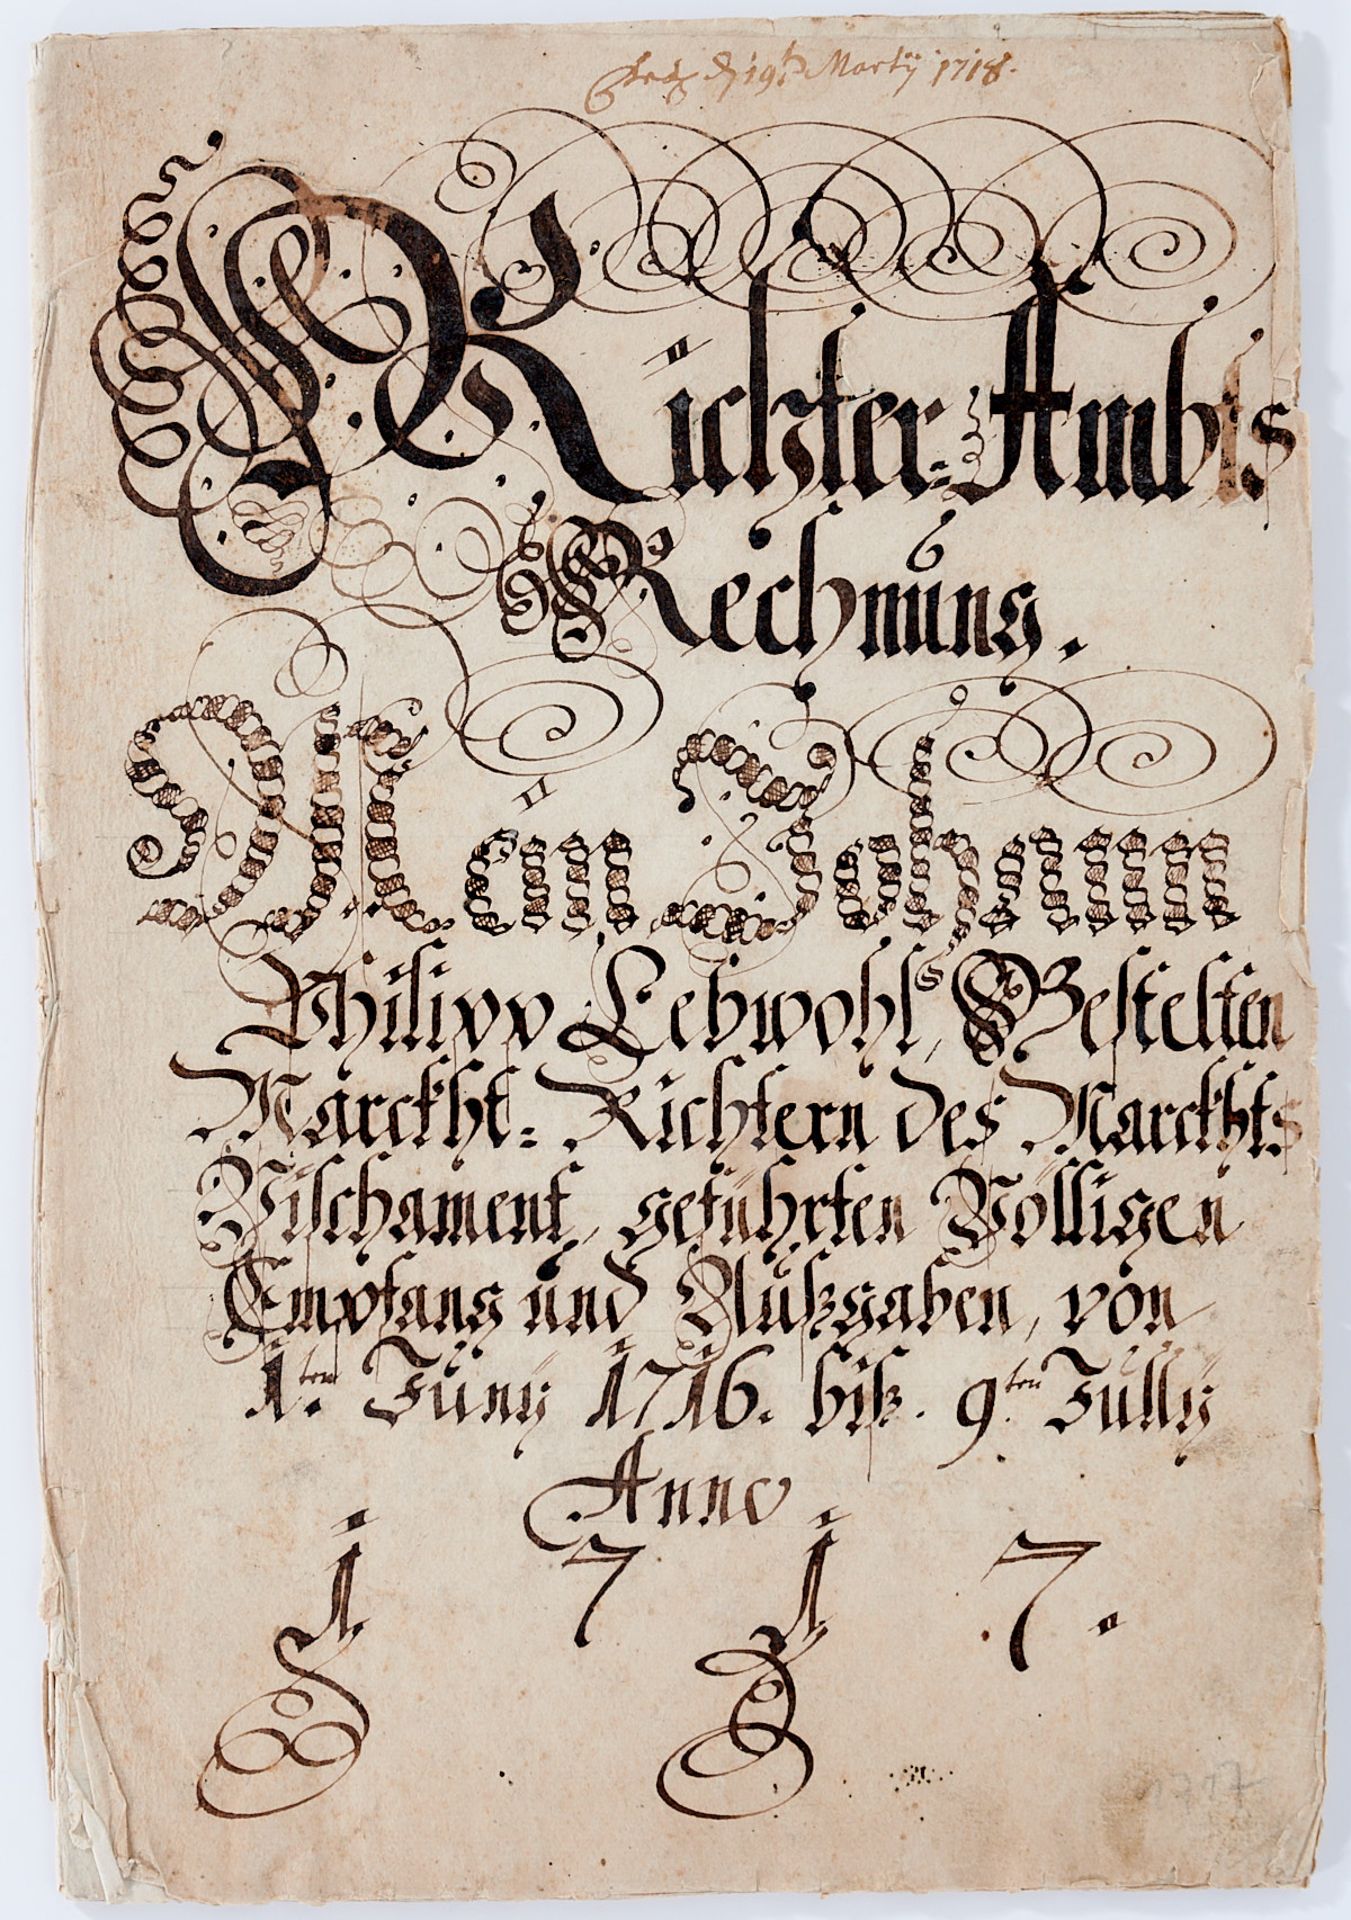 Fischamend "Richter Ambts Rechnung". - Deutsche Handschrift auf Papier.